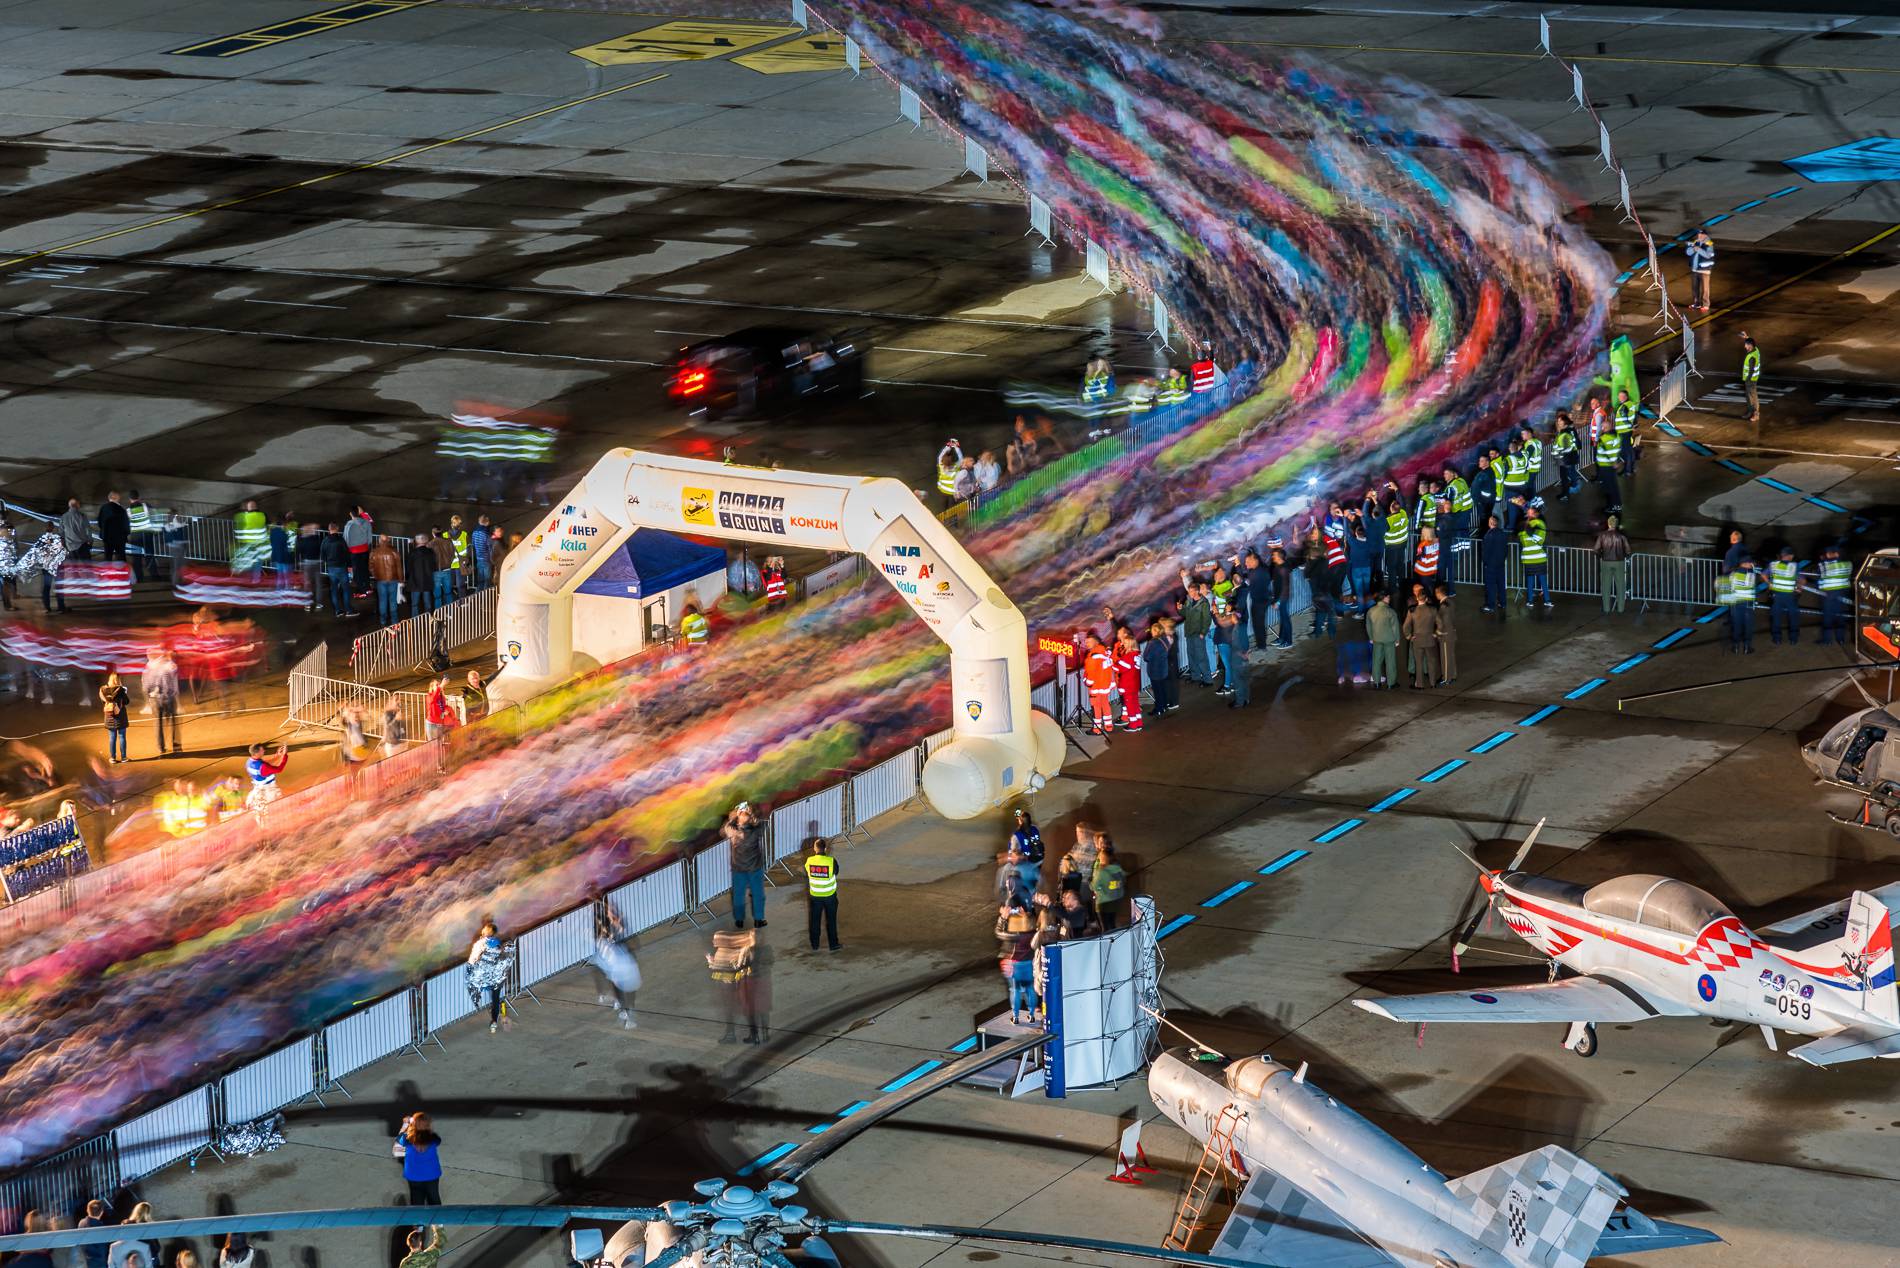 00:24 Run iz zraka: Pogledajte ove spektakularne fotografije